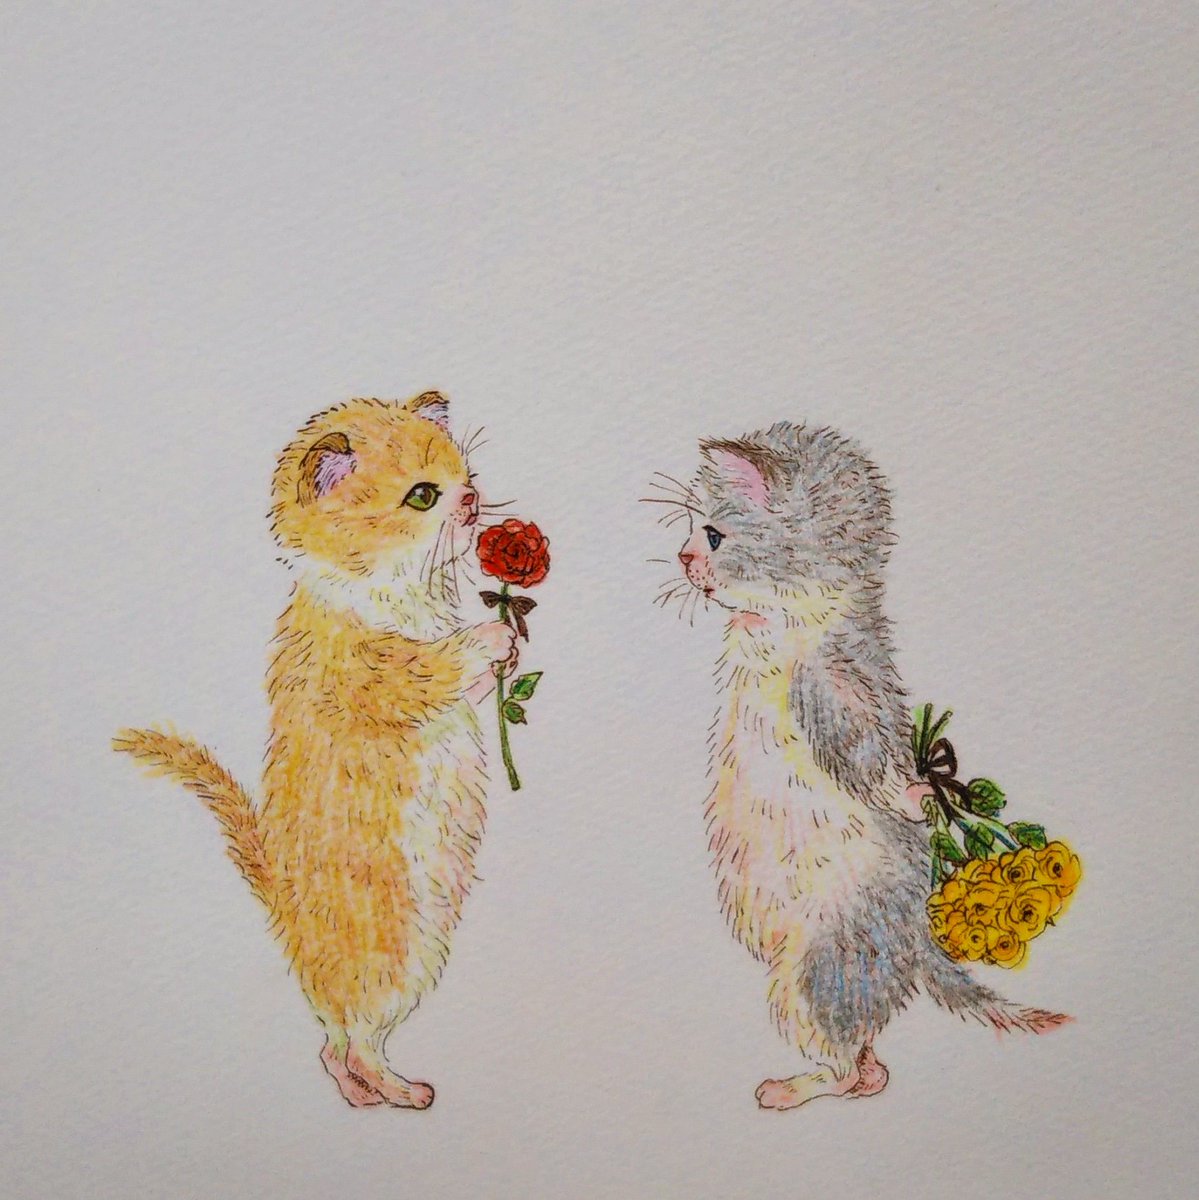 いしかわめぐみ Twitter પર 子猫のバレンタインデー 海外ではお花をあげる国が多いみたいですね なんとなく花言葉を調べてから描いたらバラの花言葉の多さにびっくりしました 赤いバラ 愛 1本 あなたしかいない 黄色いバラ 友情 15本 ごめんなさい 猫